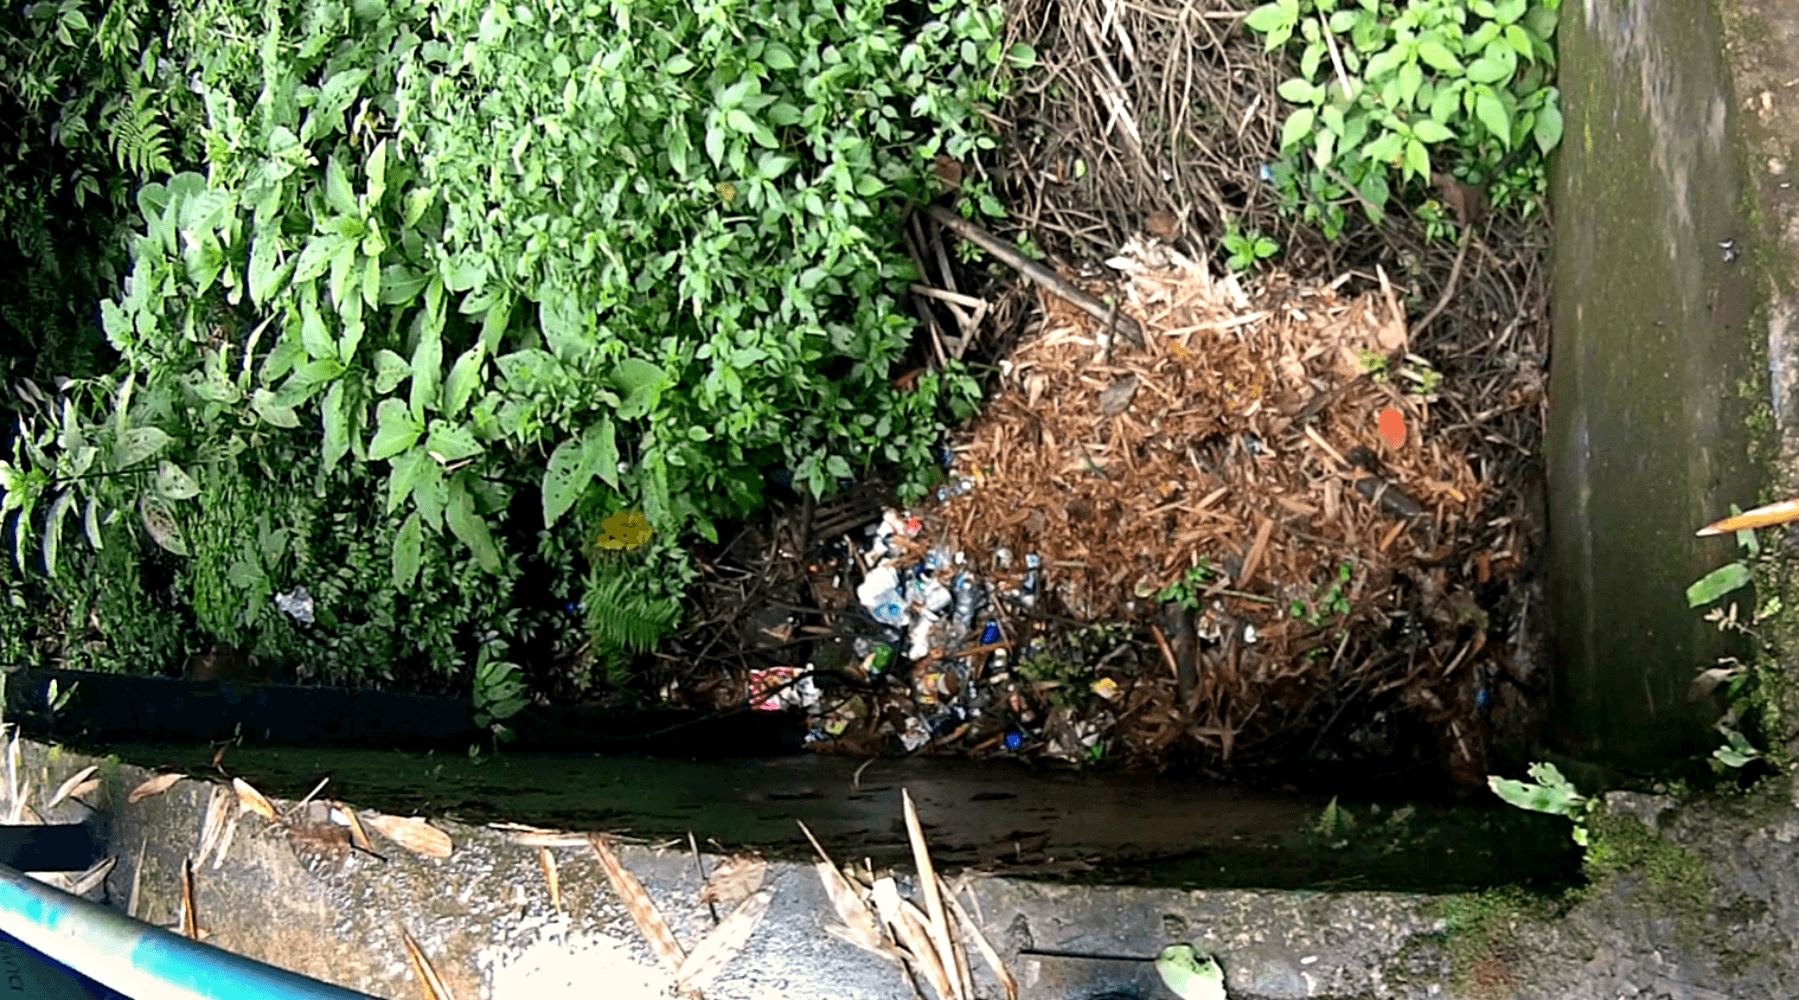 sampah menumpuk di sumber pitu tumpang (arifharianto)